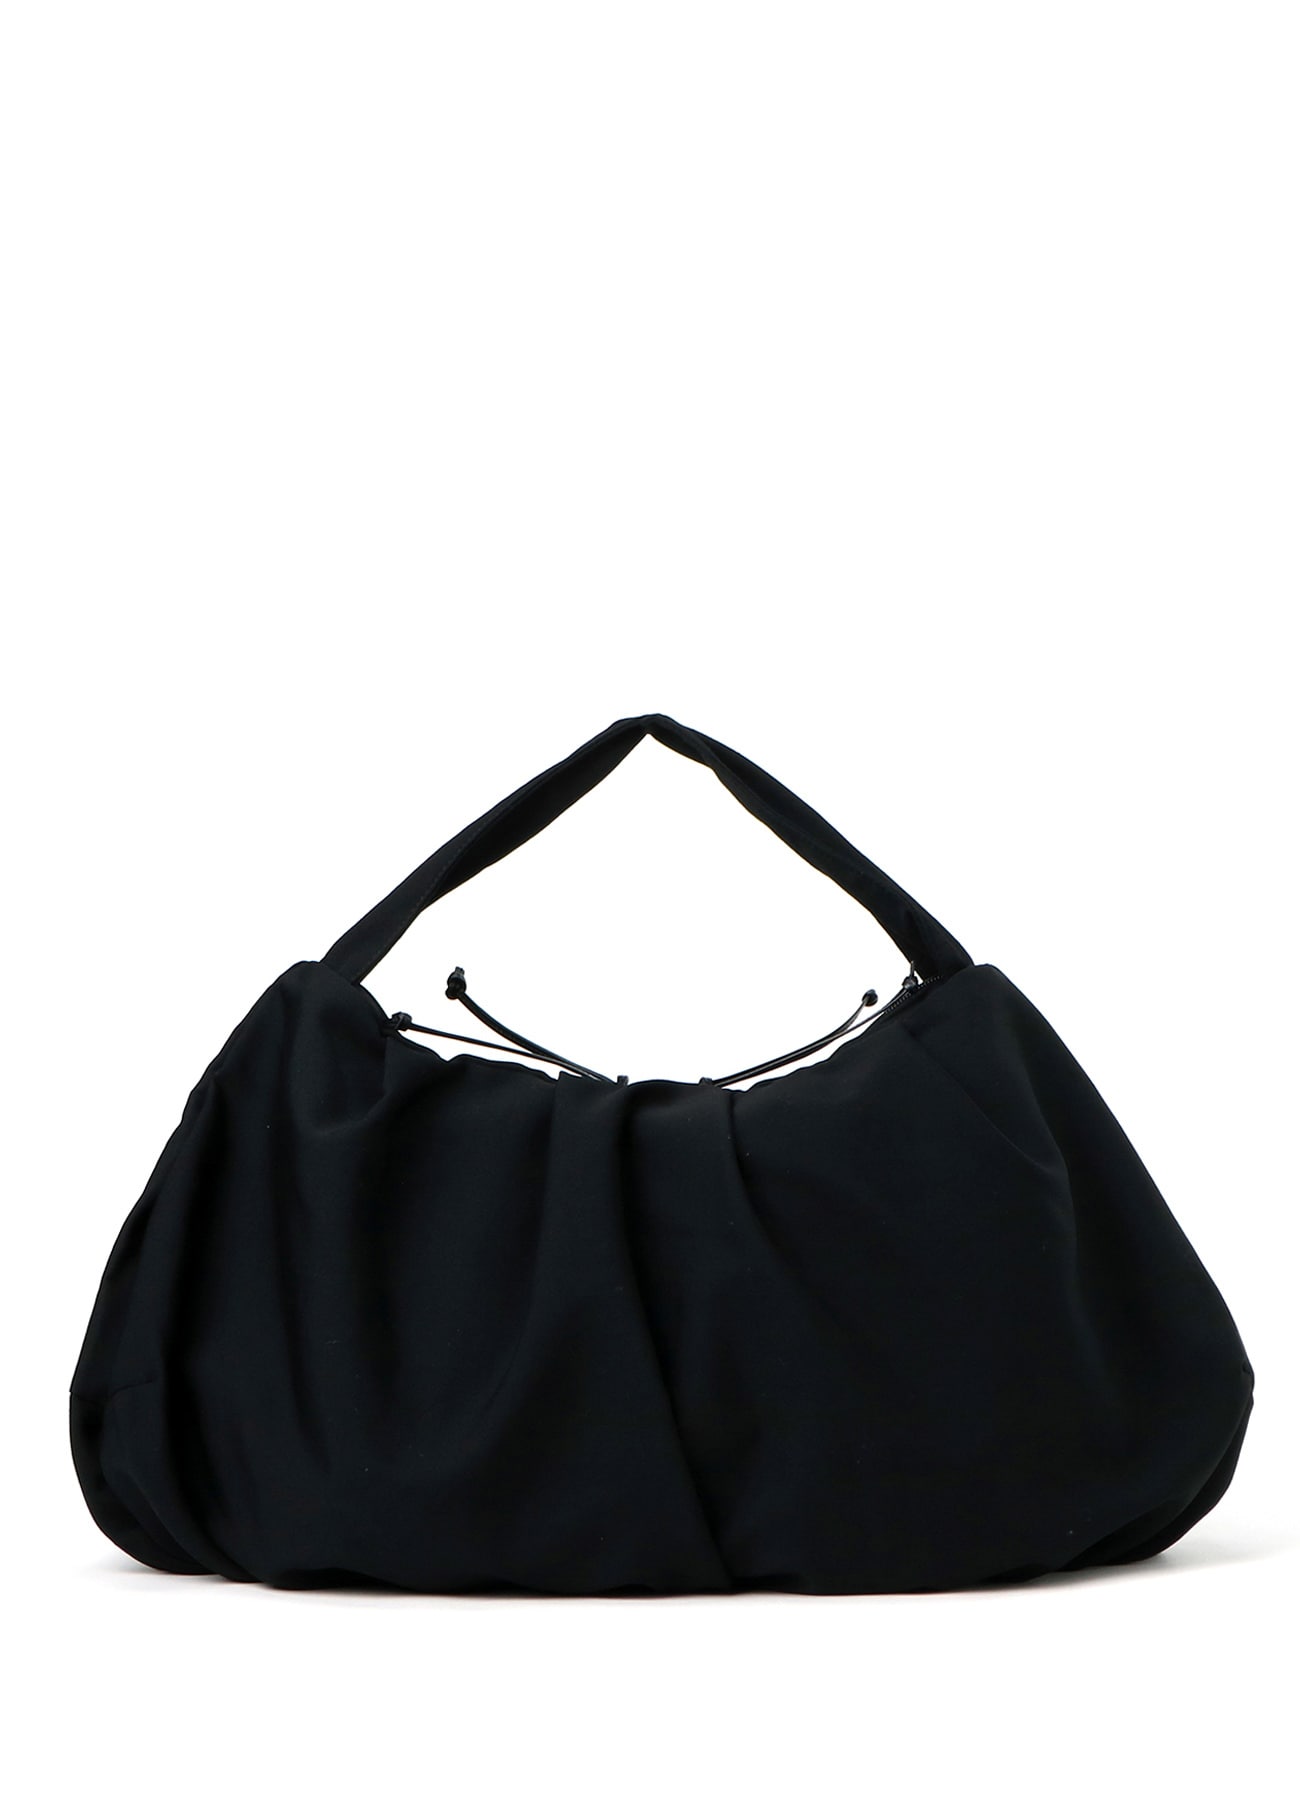 S black nylon gathered crossbody bag